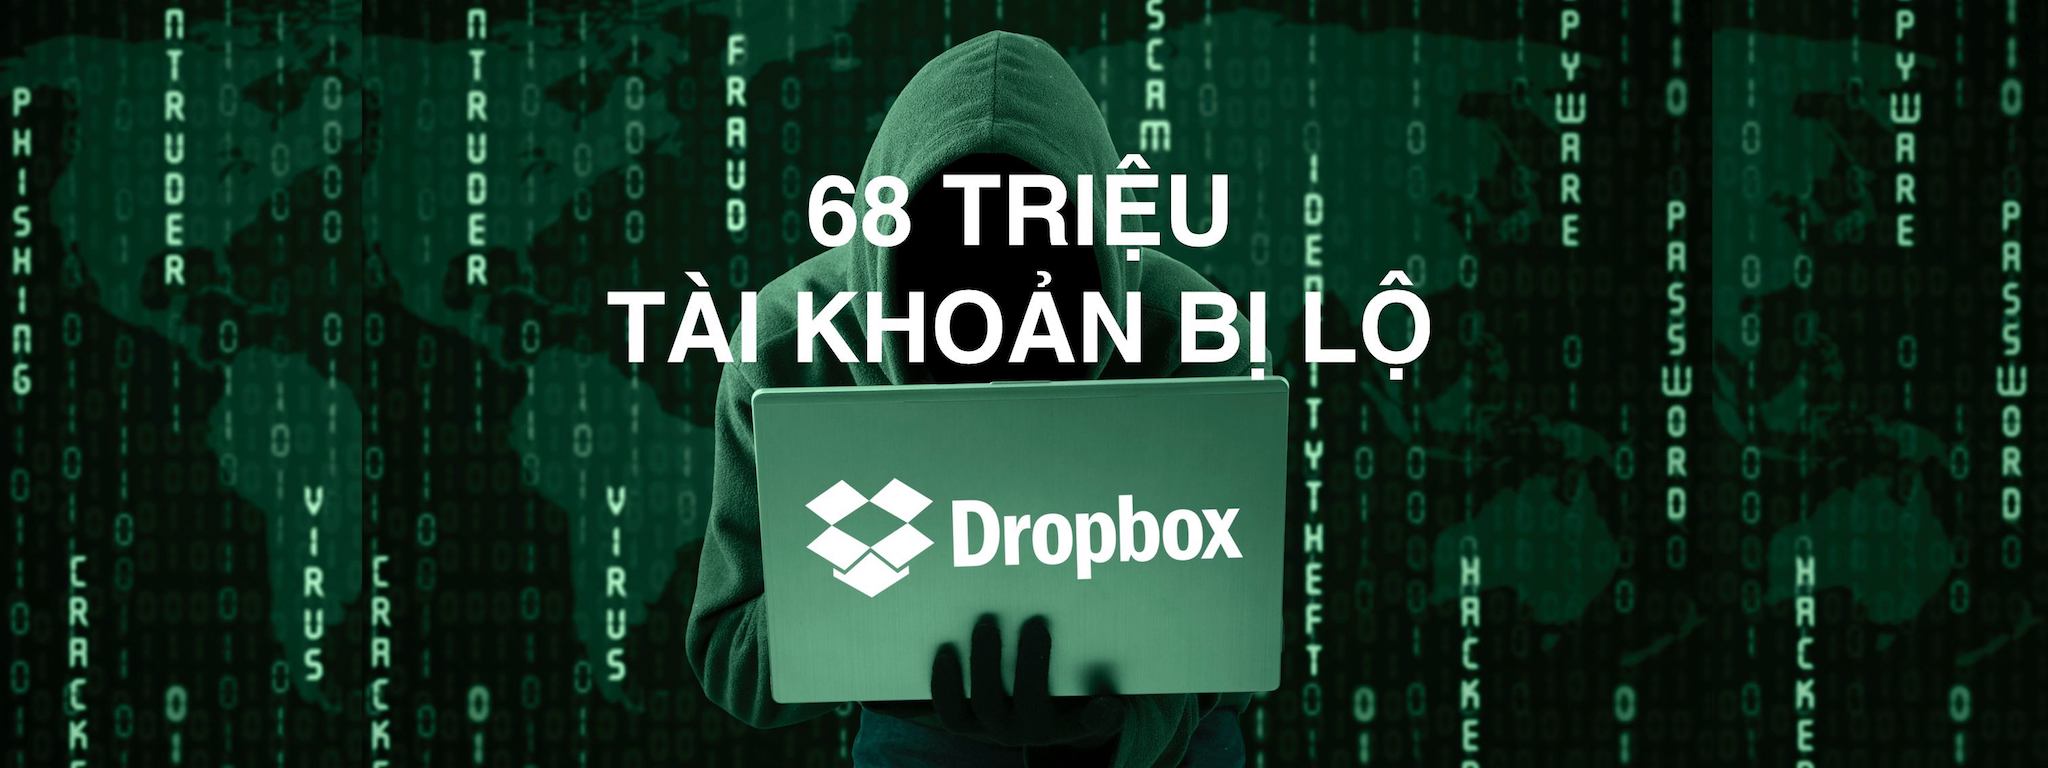 Dropbox bị lộ 68 triệu tài khoản - nên đổi mật khẩu, hoặc kích hoạt bảo mật 2 lớp nếu bạn chưa làm